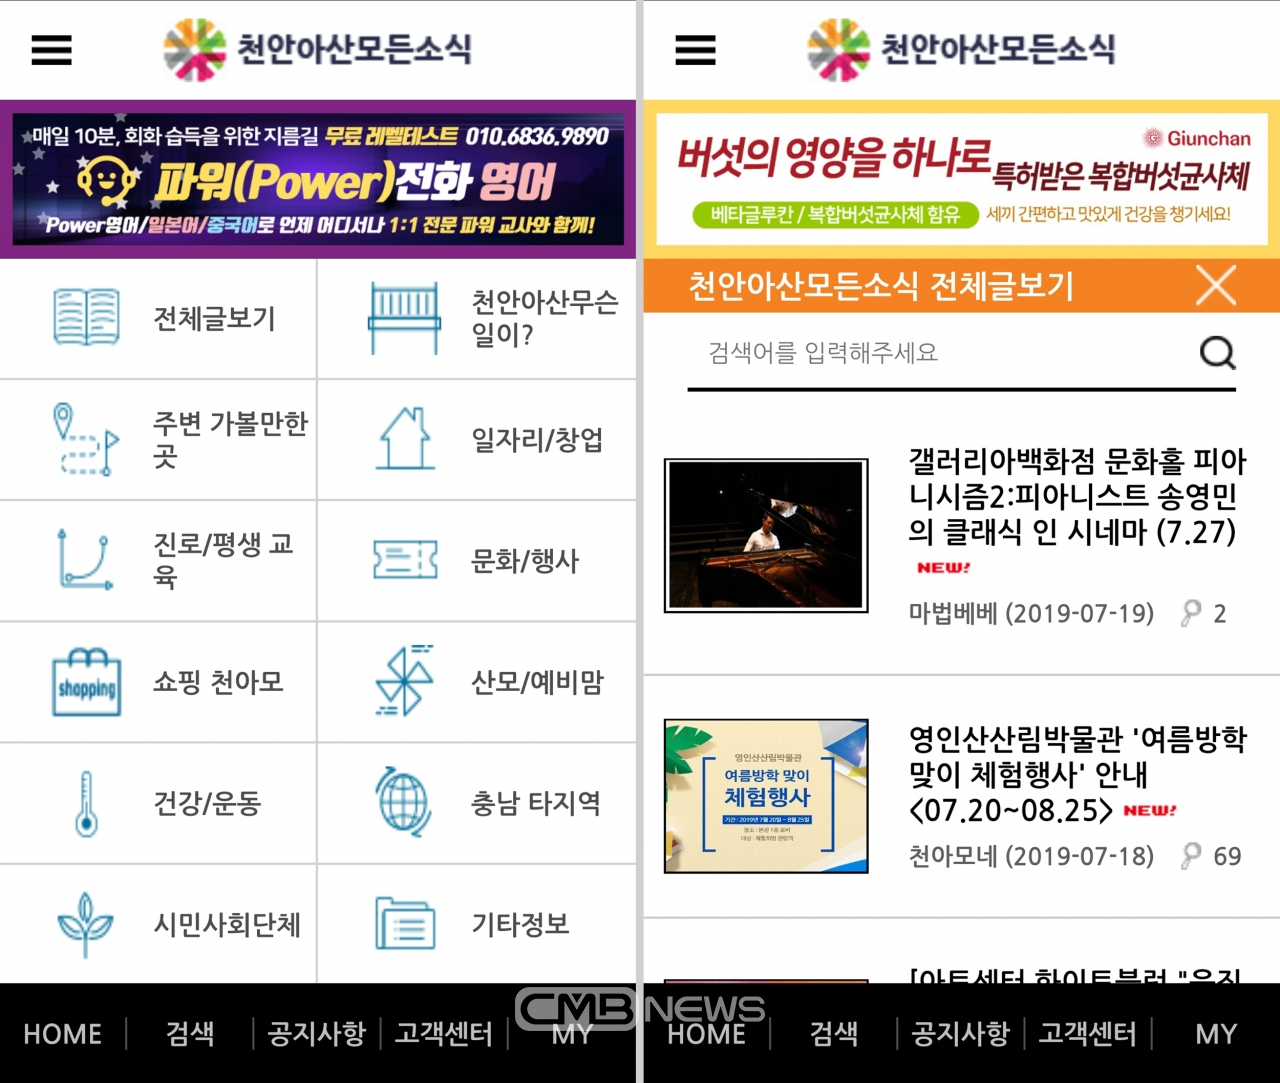 천안아산모든소식 앱 캠처 모습 (사진 : 유영욱 시민기자)